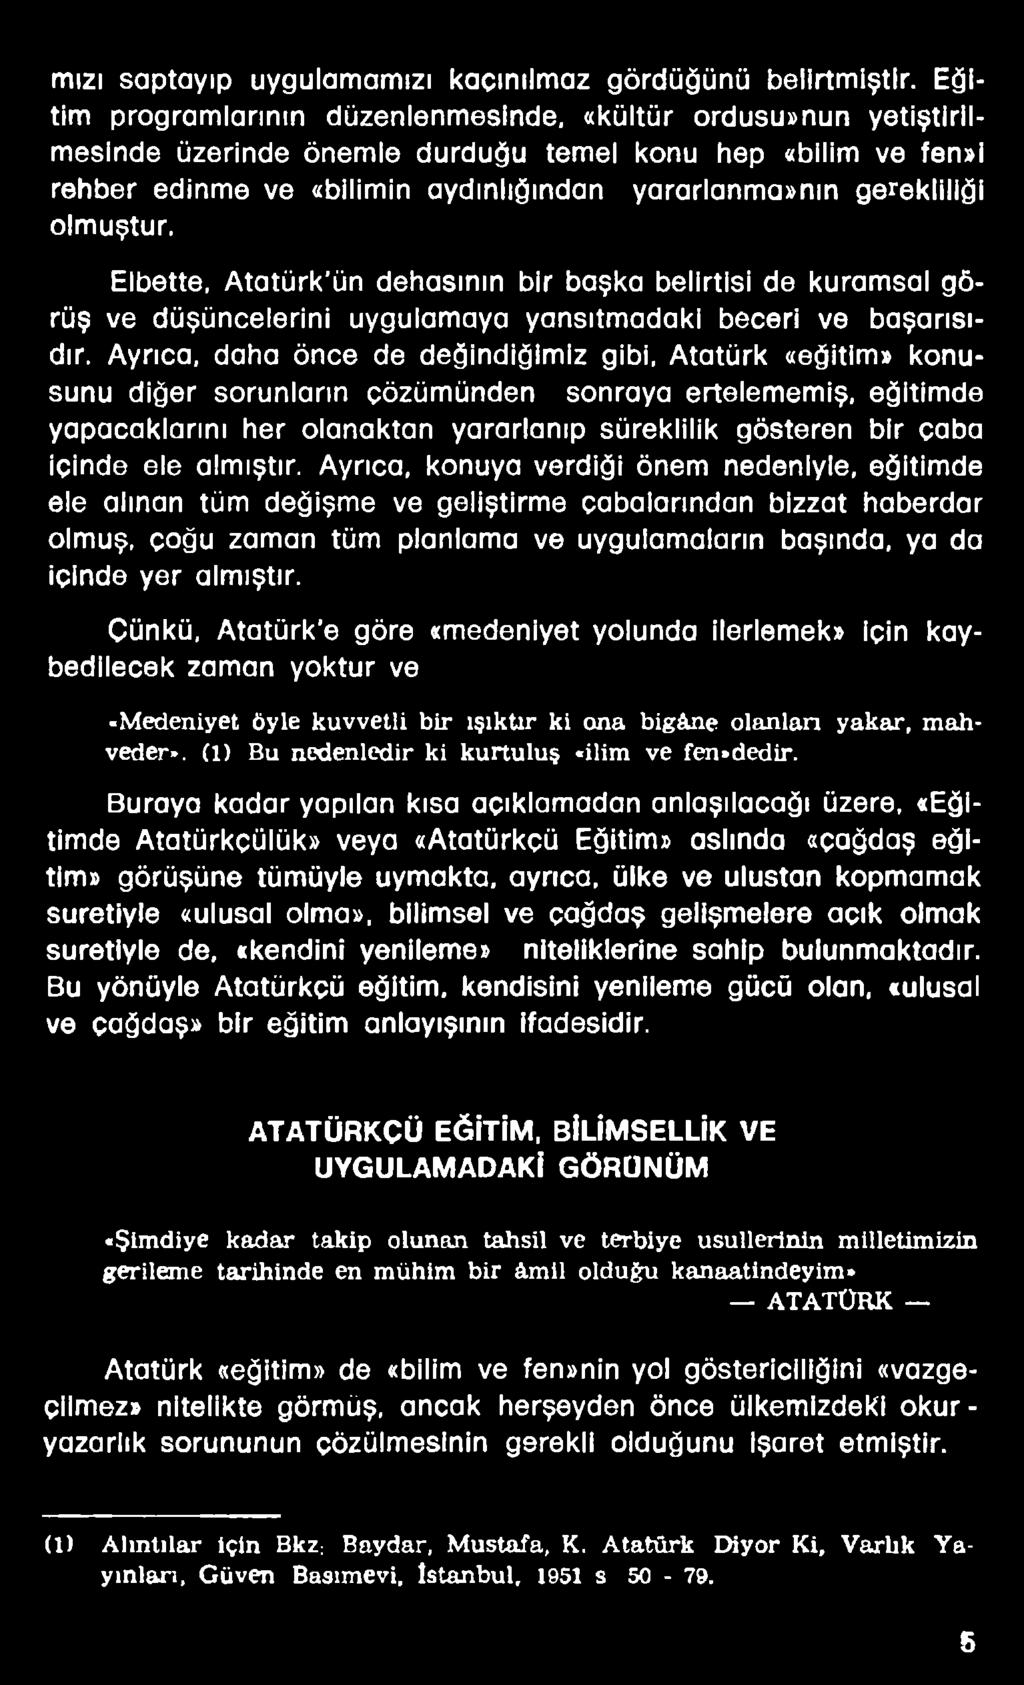 Elbette, Atatürk'ün dehasının bir başka belirtisi de kuramsal görüş ve düşüncelerini uygulamaya yansıtmadaki beceri ve başarısıdır.